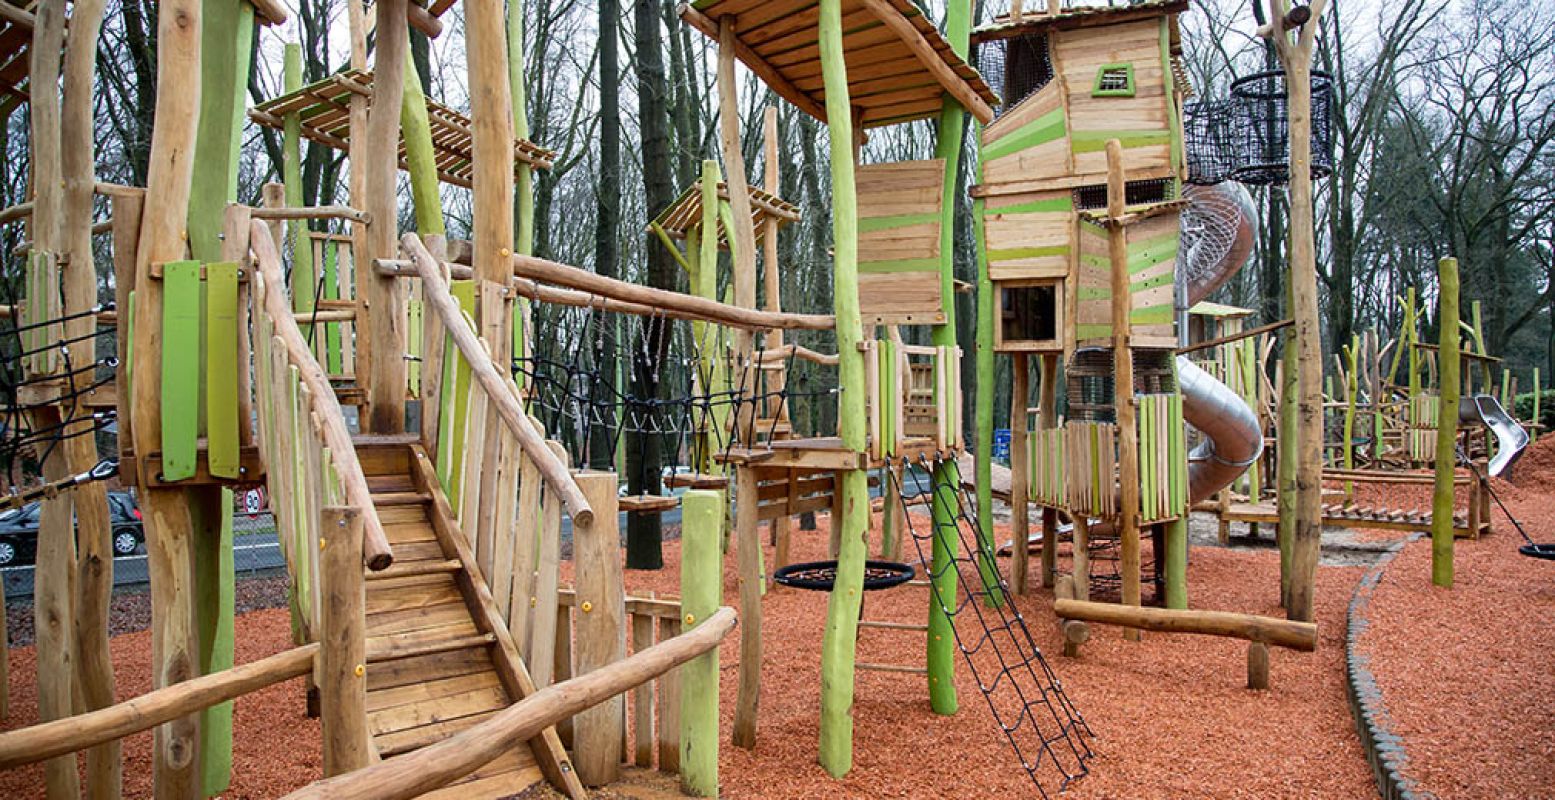 De nieuwe speeltuin van Burgers' Zoo is ook onderdeel van de lichttour. Foto: Burgers' Zoo.